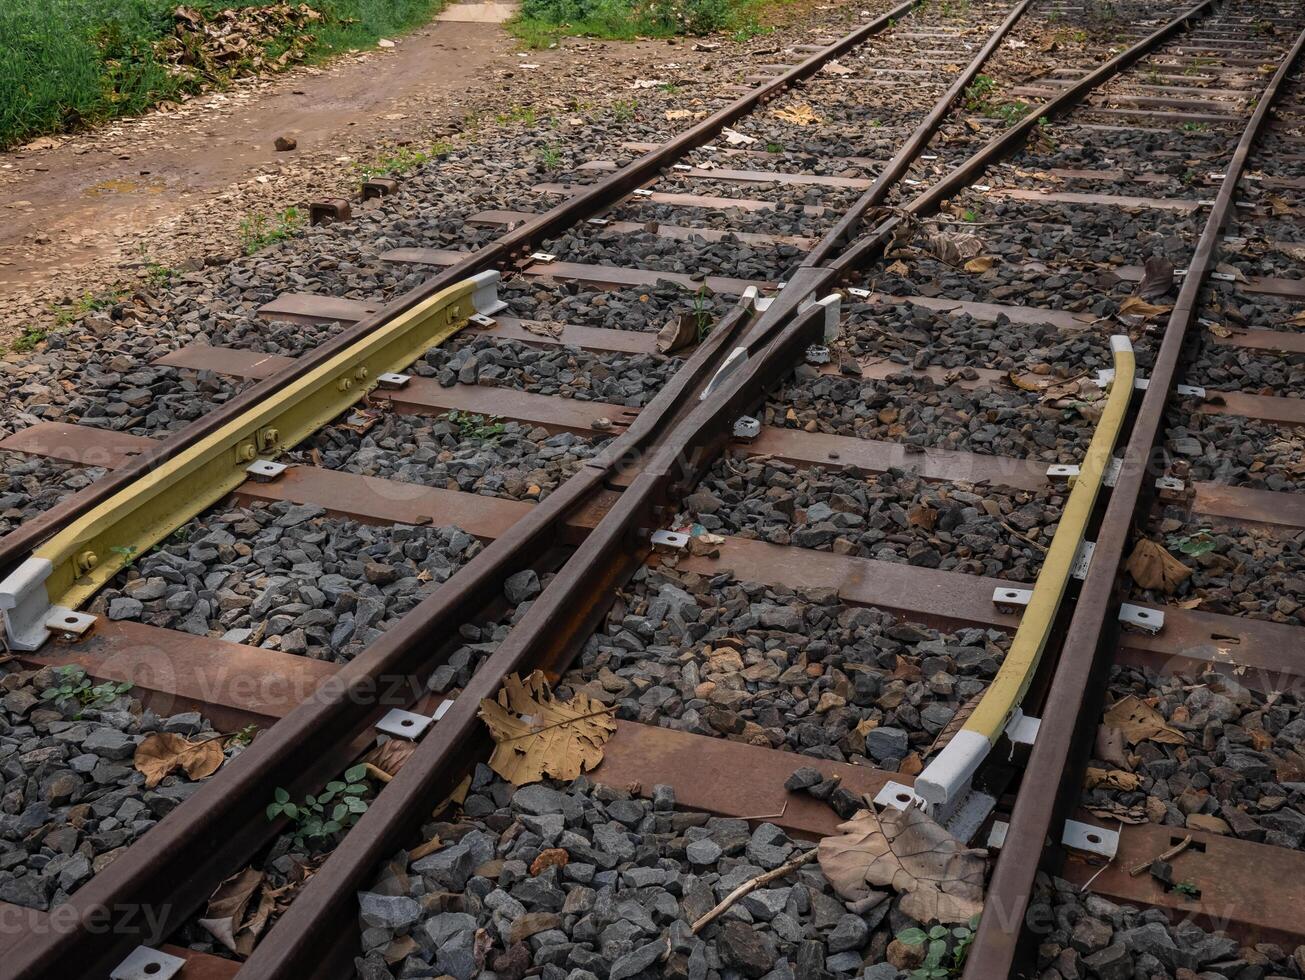 le train des pistes sont fabriqué de rouillé fer, mais sont encore capable à soutien le poids de le train photo